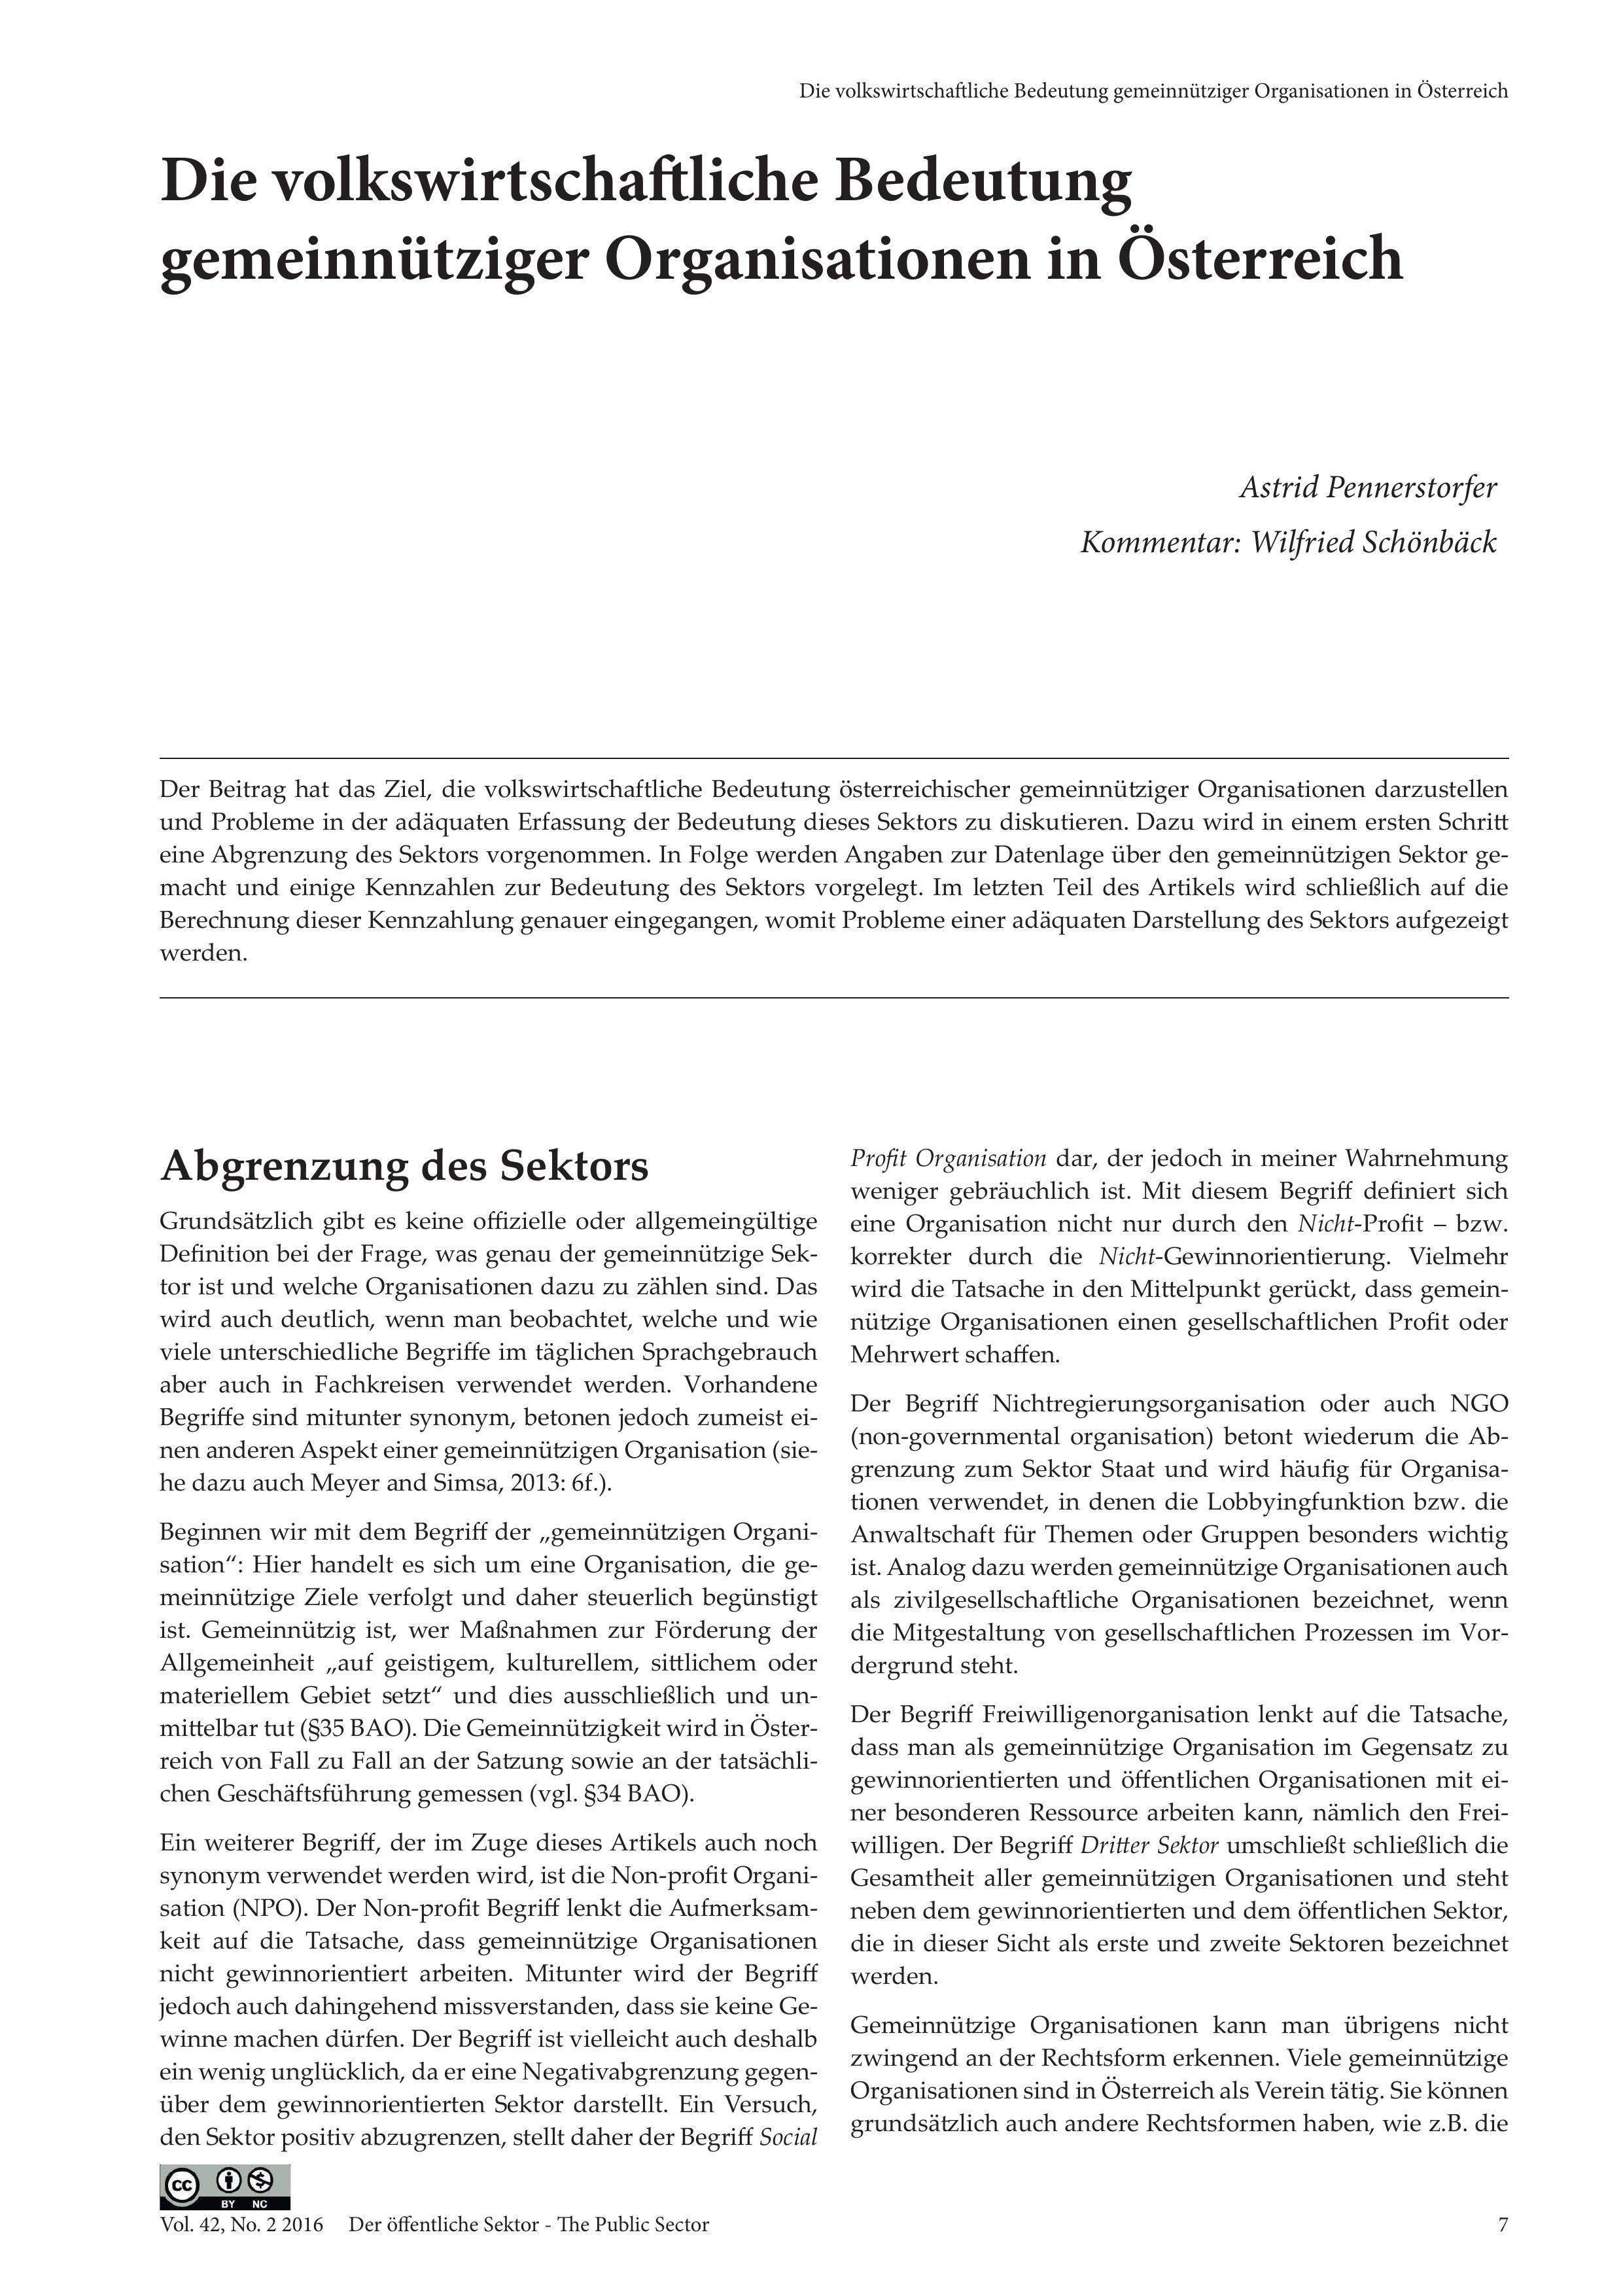 Die volkswirtschaftliche Bedeutung gemeinnütziger Organisationen in Österreich (Kommentiert von Wilfried Schönbäck)